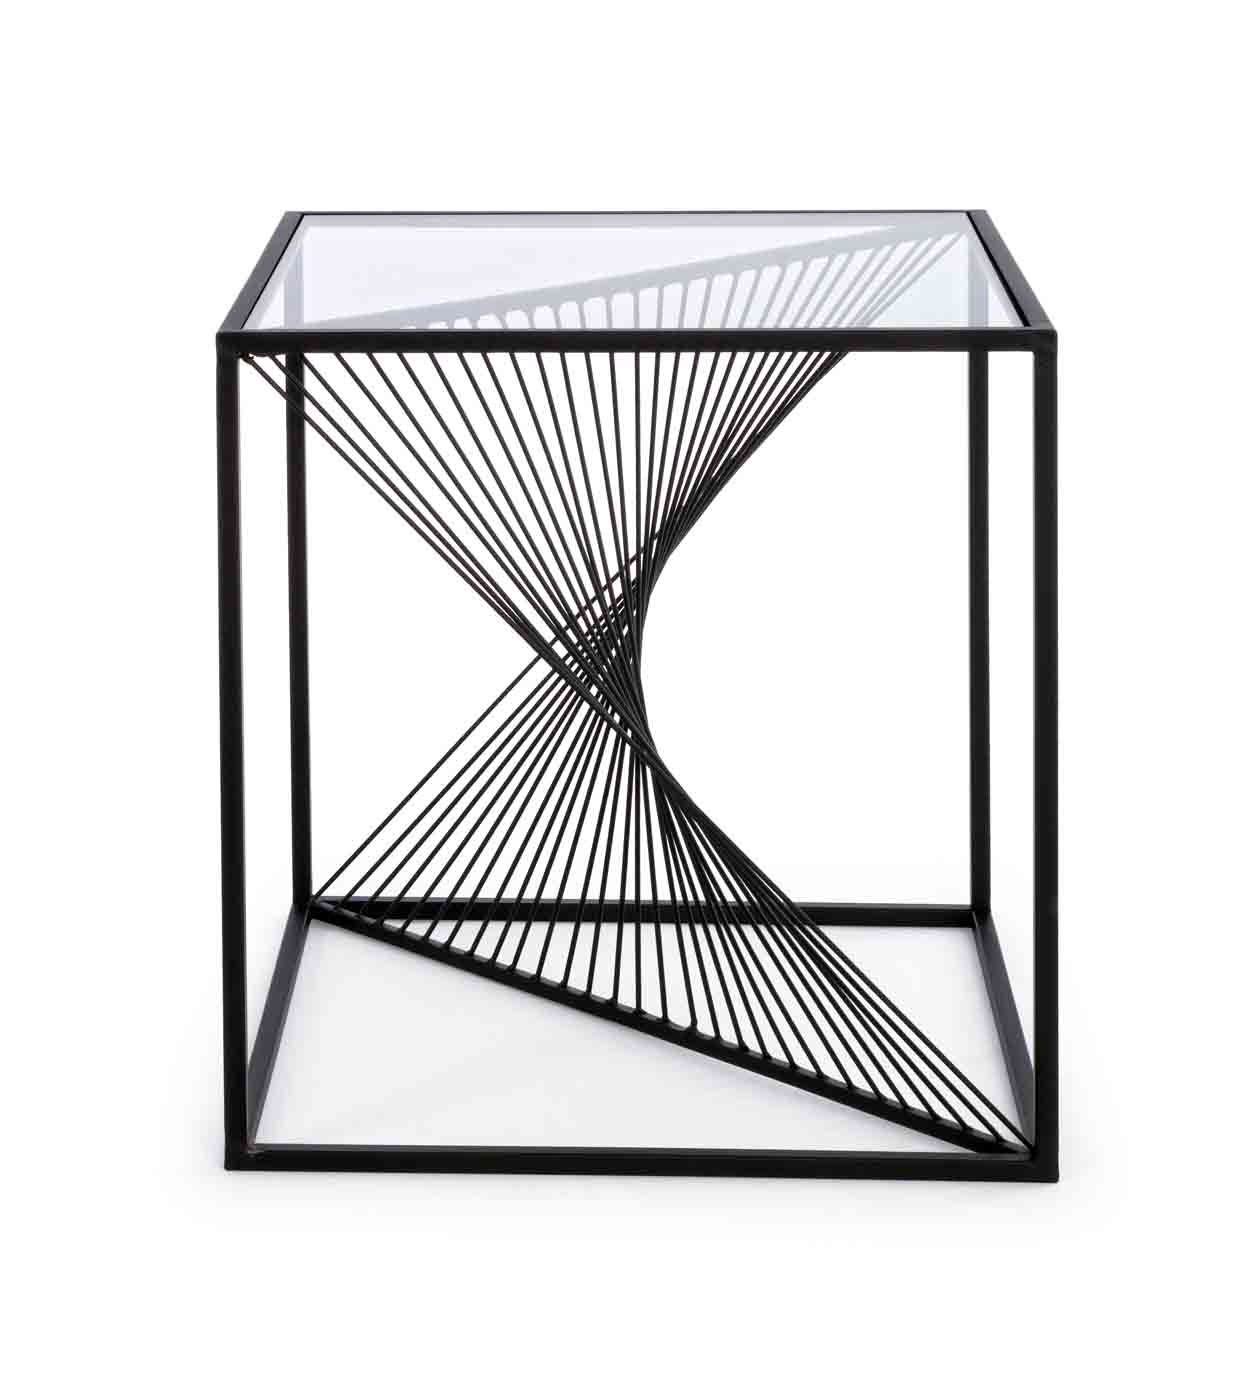 Der Beistelltisch Espiral überzeugt mit seinem modernen und besonderen Design. Gefertigt wurde der Tisch aus einem Metallgestell. Die Tischplatte ist aus Glas.